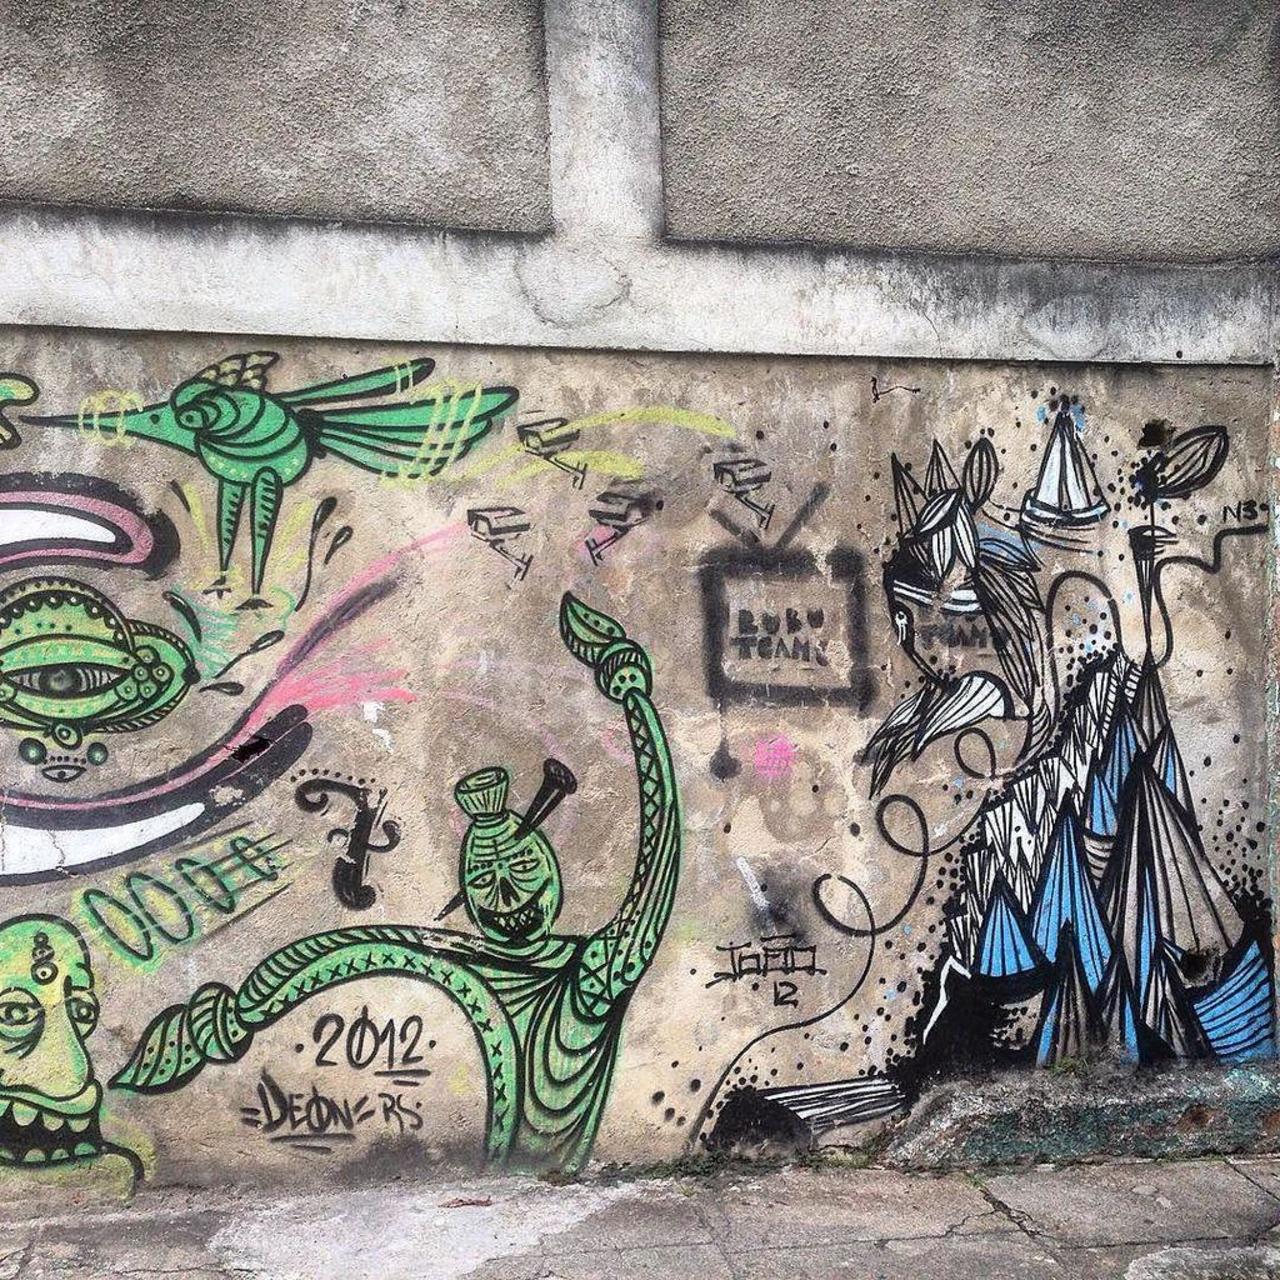 #graffiti #graffporn #streetart #streetartrio #streetartglobe #urbanart #spraydaily #MuralsDaily #nofilter #santate… http://t.co/PVvDNJ95dD